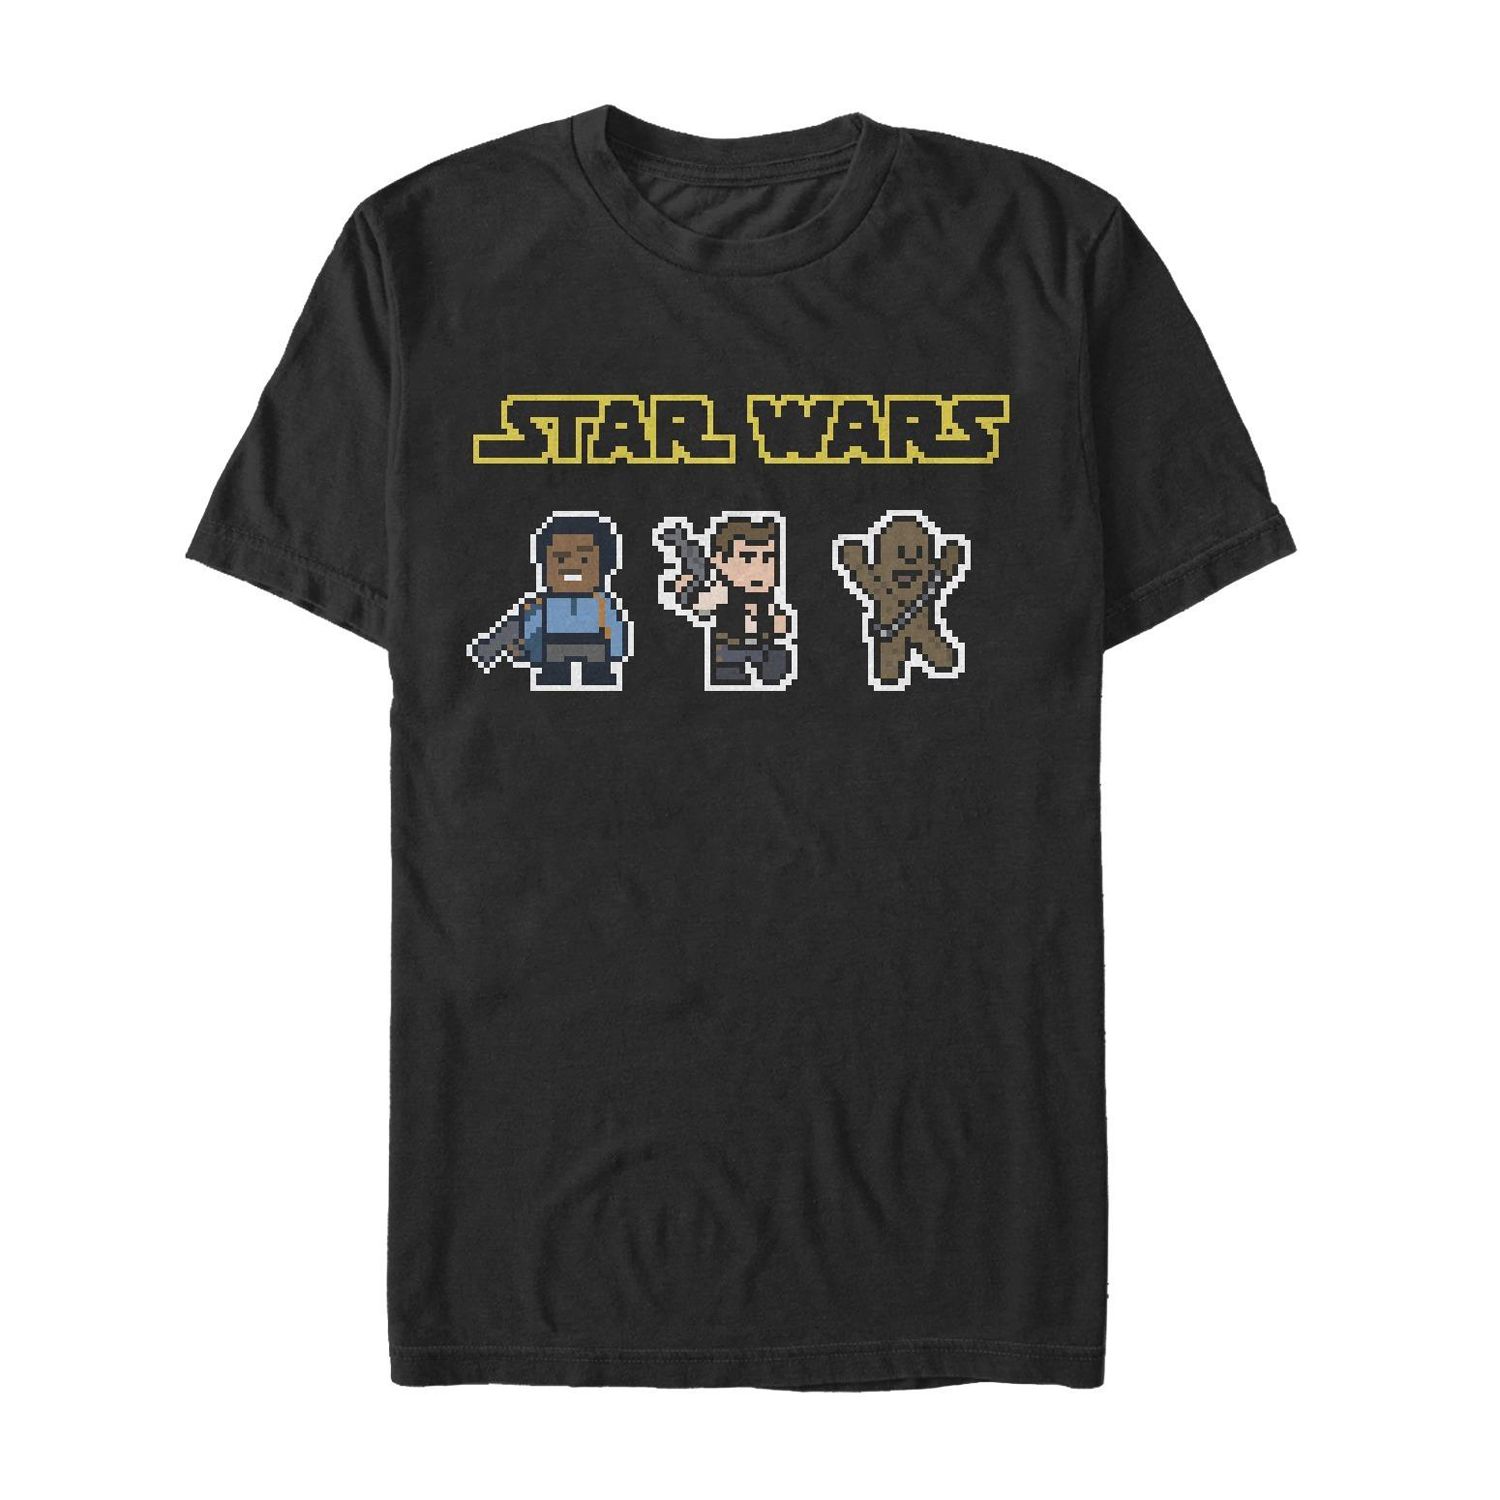 Мужская футболка Star Wars Smugglers Three